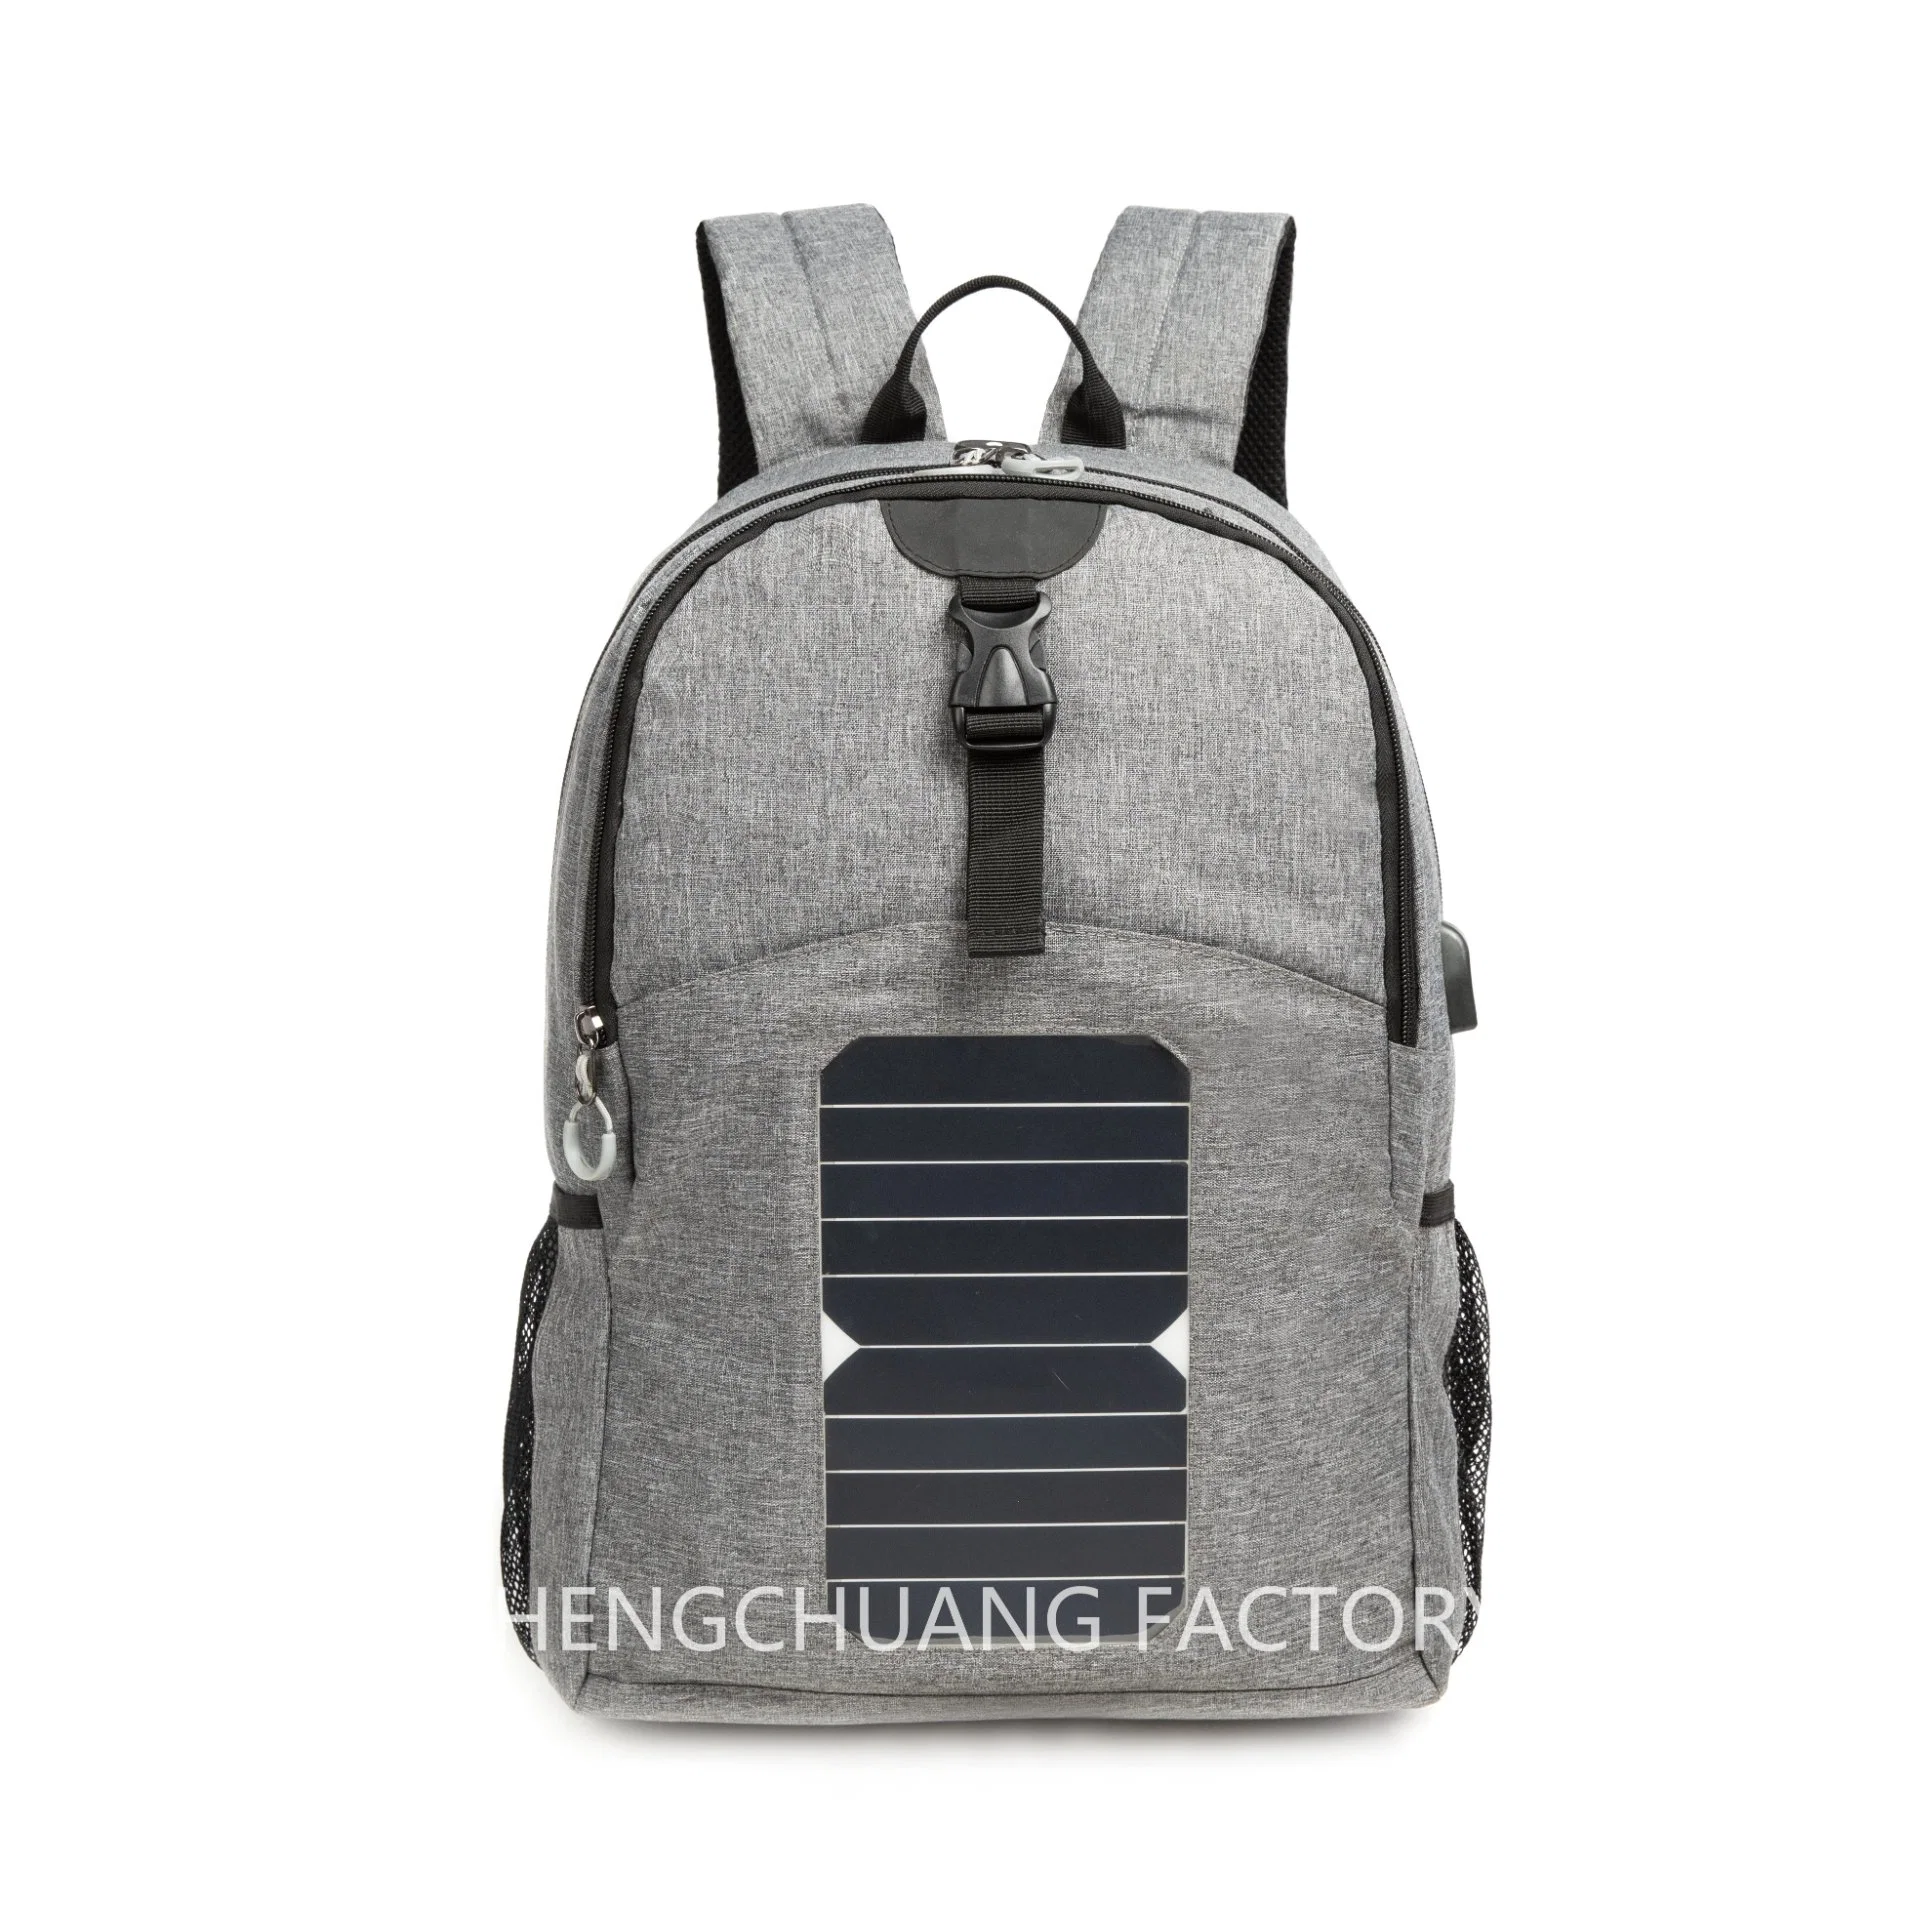 حقيبة ظهر شمسية للرجال عالية التقنية Smart Bag ذات لوحة شمسية خارجية حقيبة ظهر بطارية كهربائية مع منفذ شحن USB